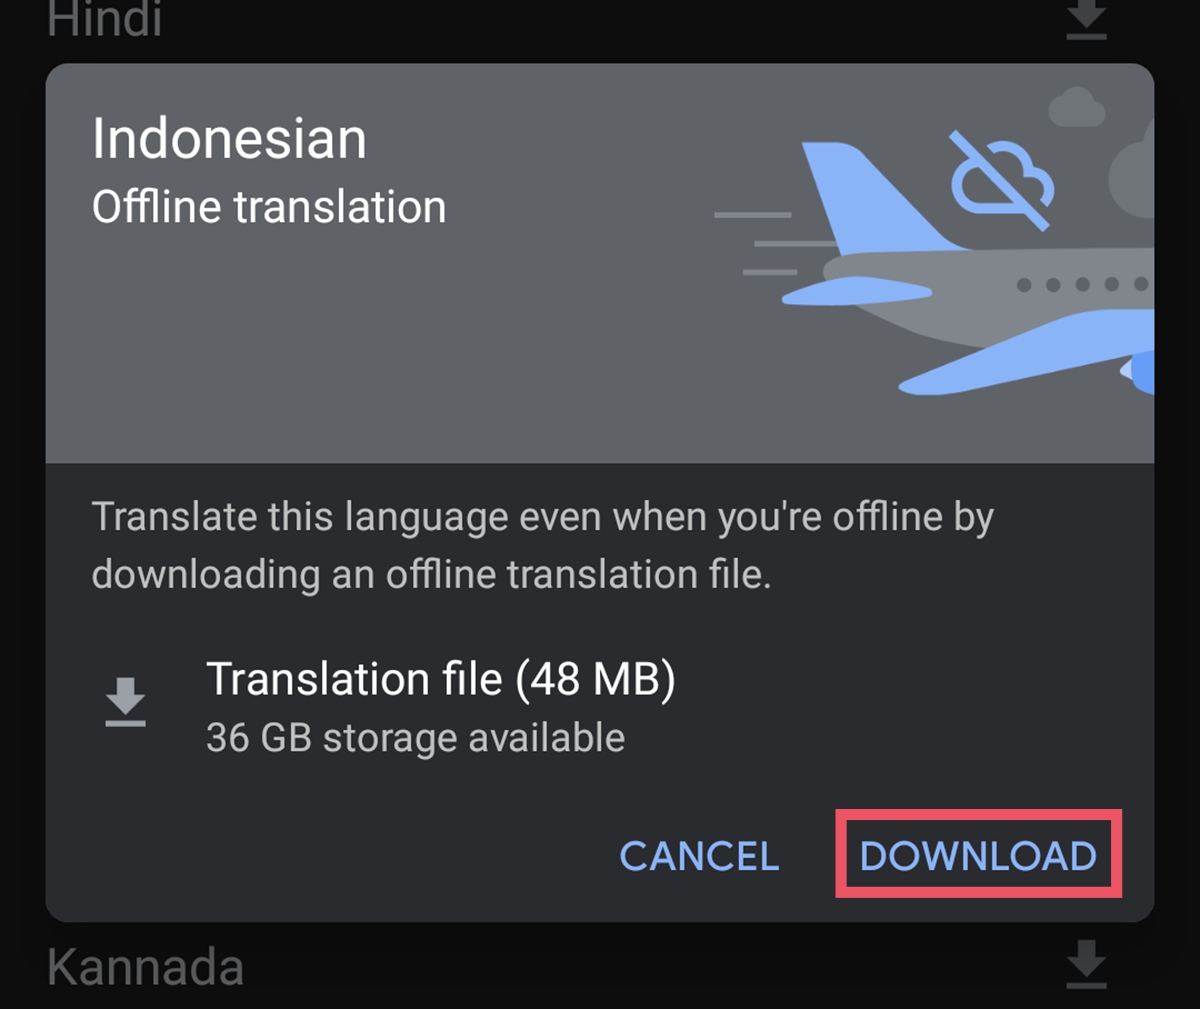 Cara Menggunakan Offline Translation di Aplikasi Google Translate